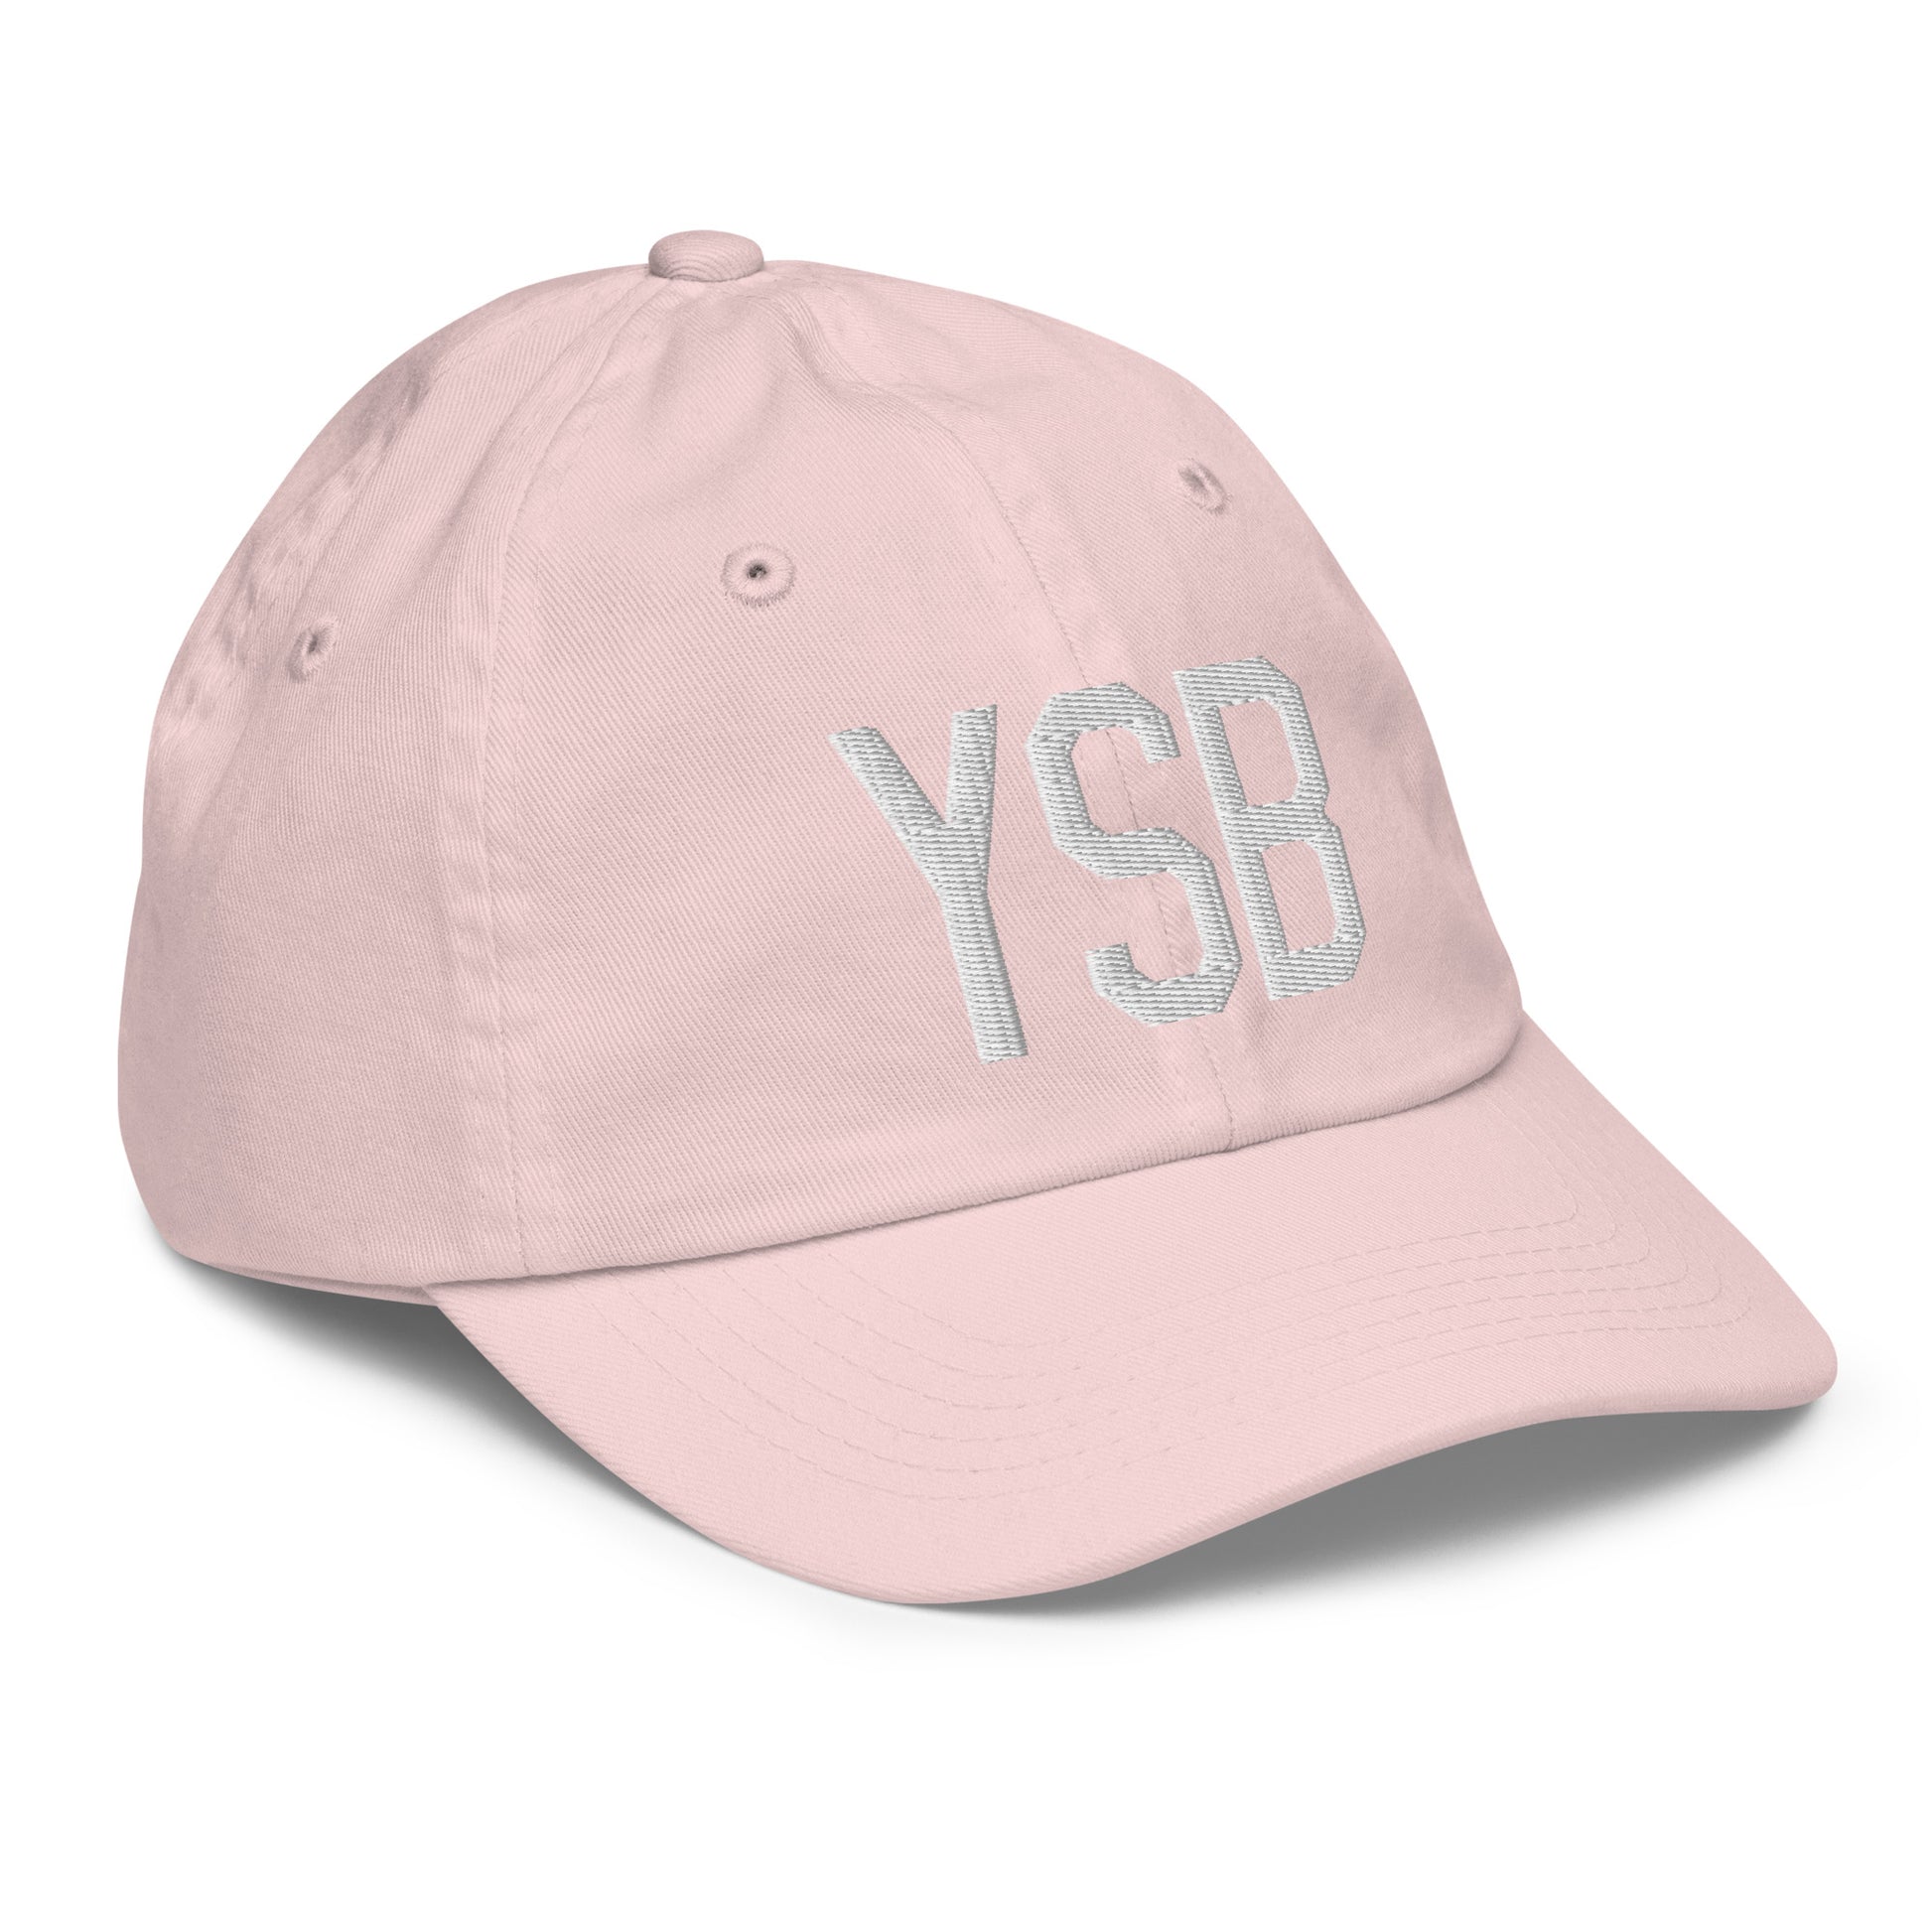 Airport Code Kid's Baseball Cap - White • YSB Sudbury • YHM Designs - Image 32